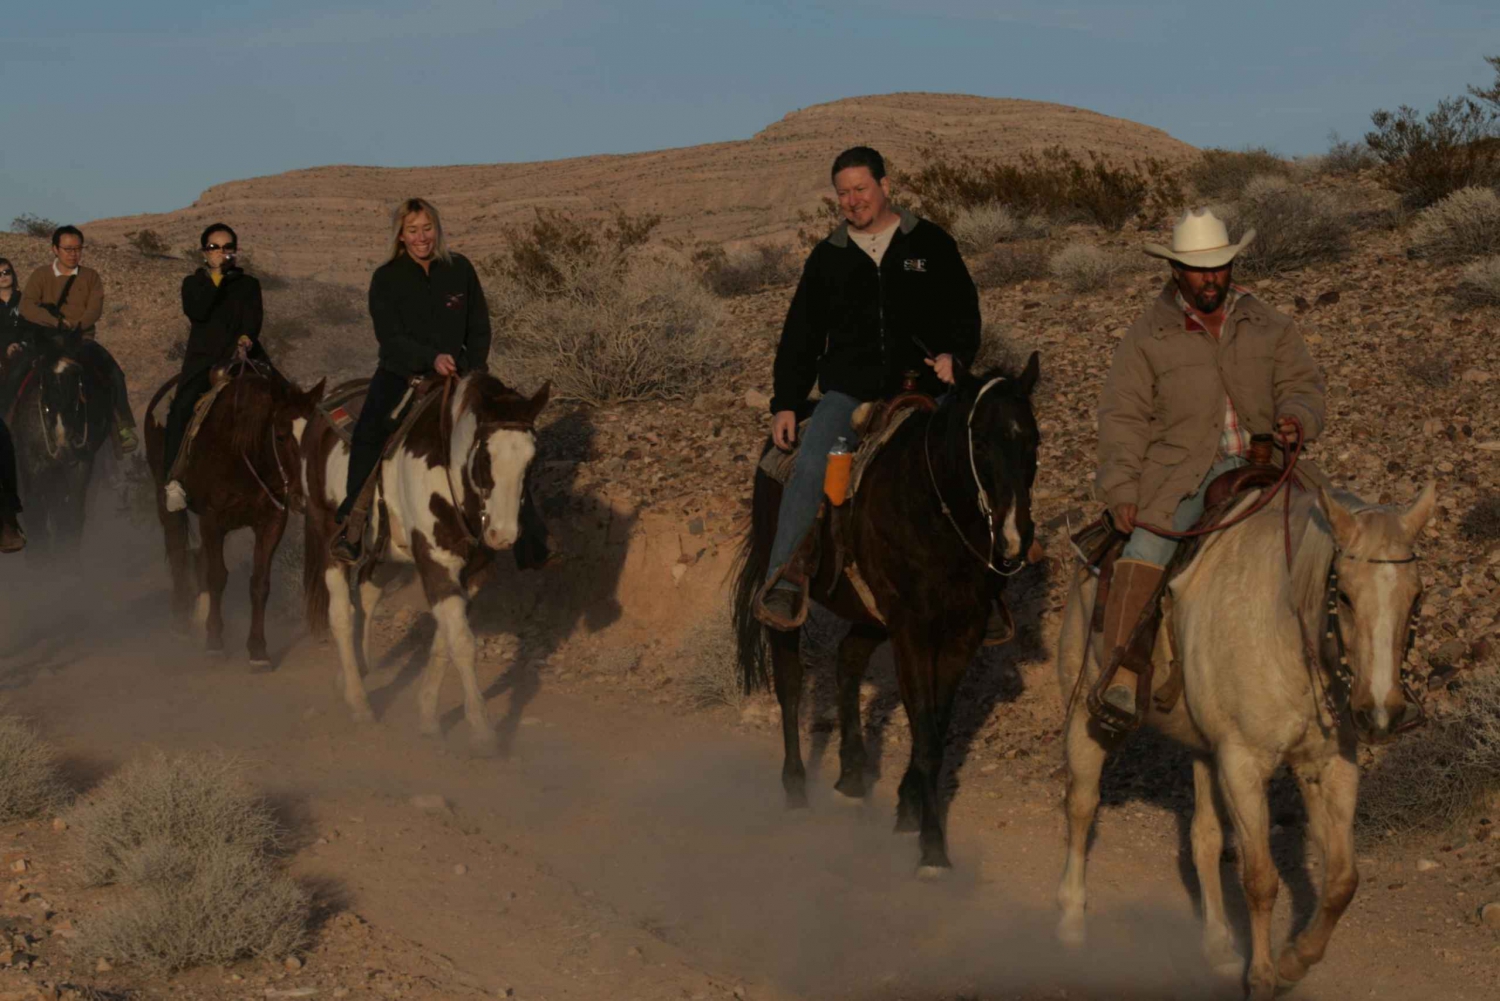 From Las Vegas: Desert Sunset Horseback Ride with BBQ Dinner